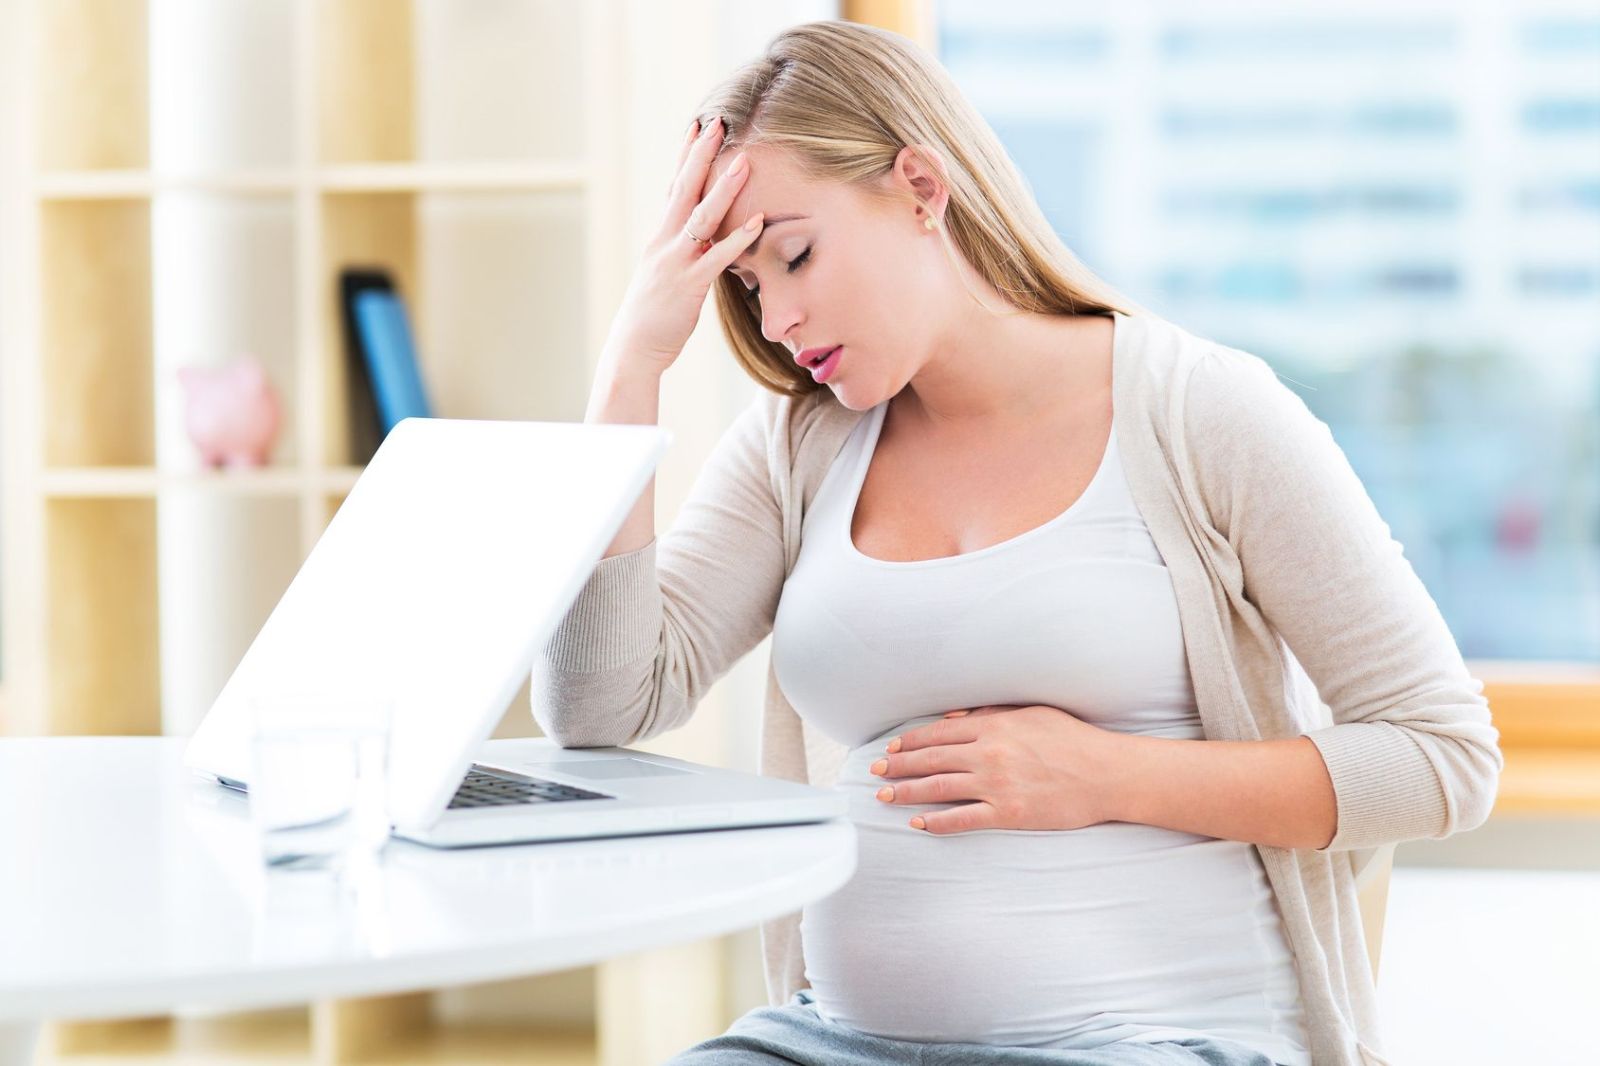 Phụ nữ bị rò rỉ hậu môn khi mang thai có ảnh hưởng gì không?